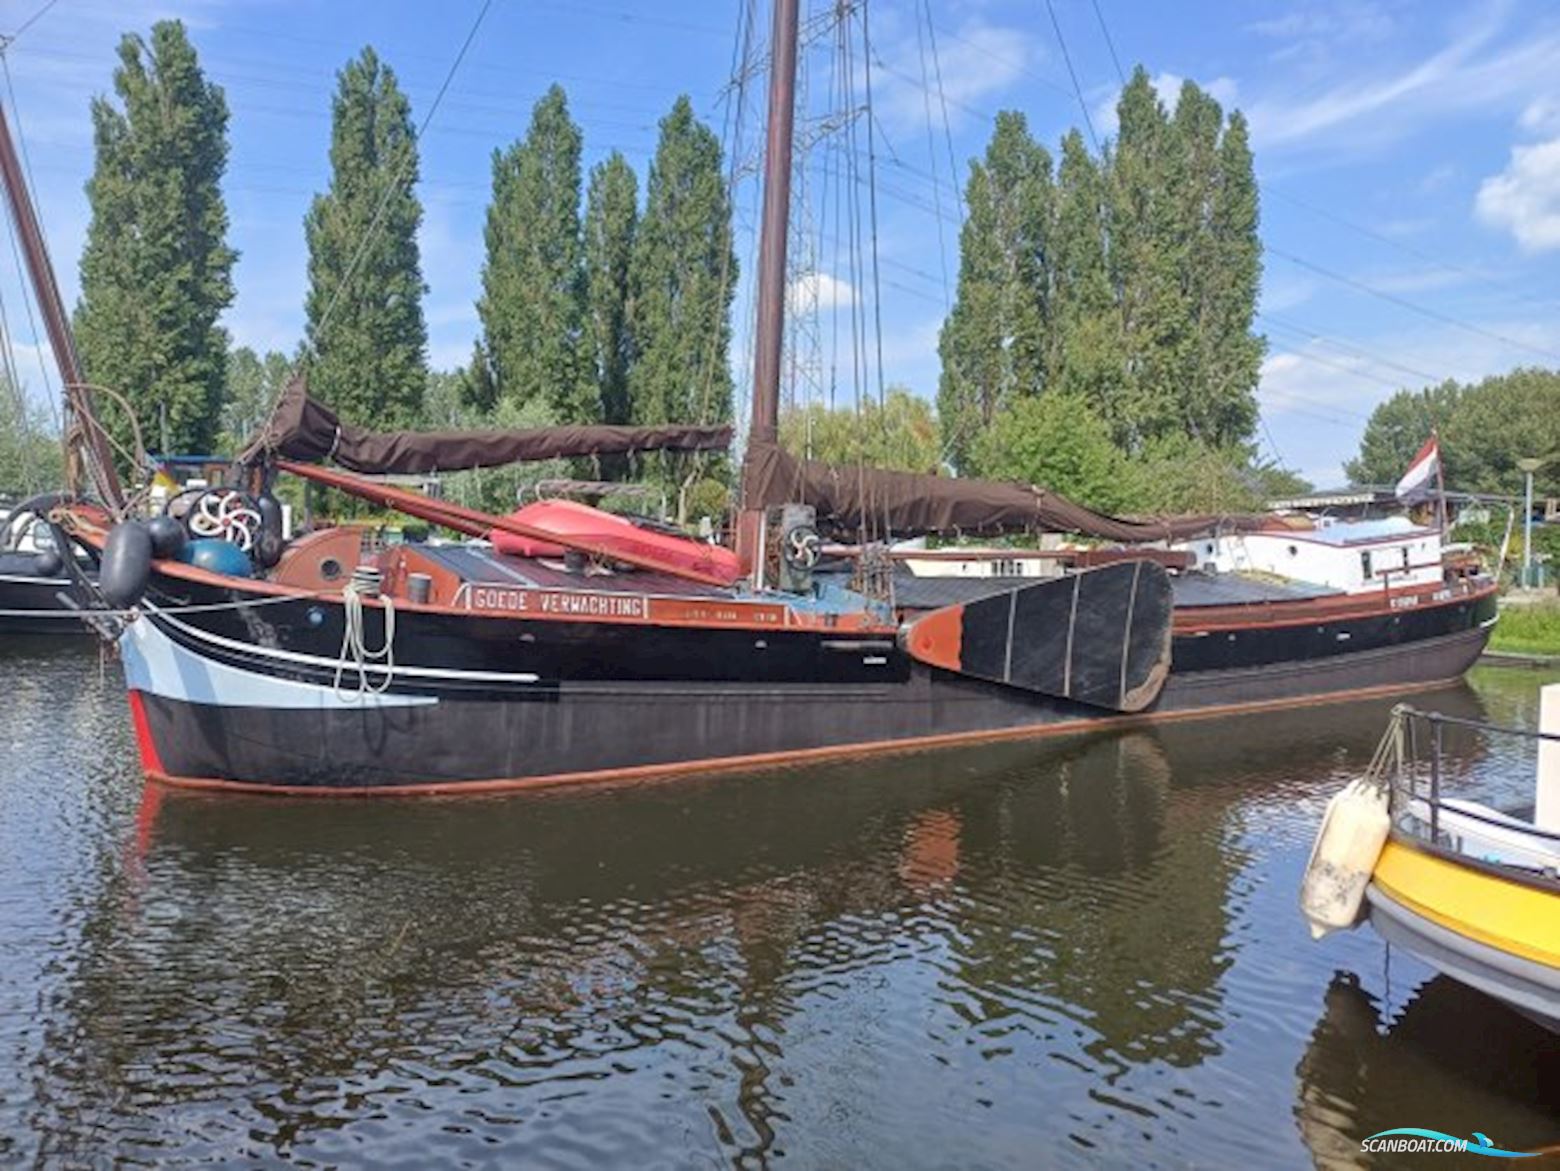 Klipperaak met vaste ligplaats Almere Woonschip Zeilend Sailing boat 1915, with DAF engine, The Netherlands